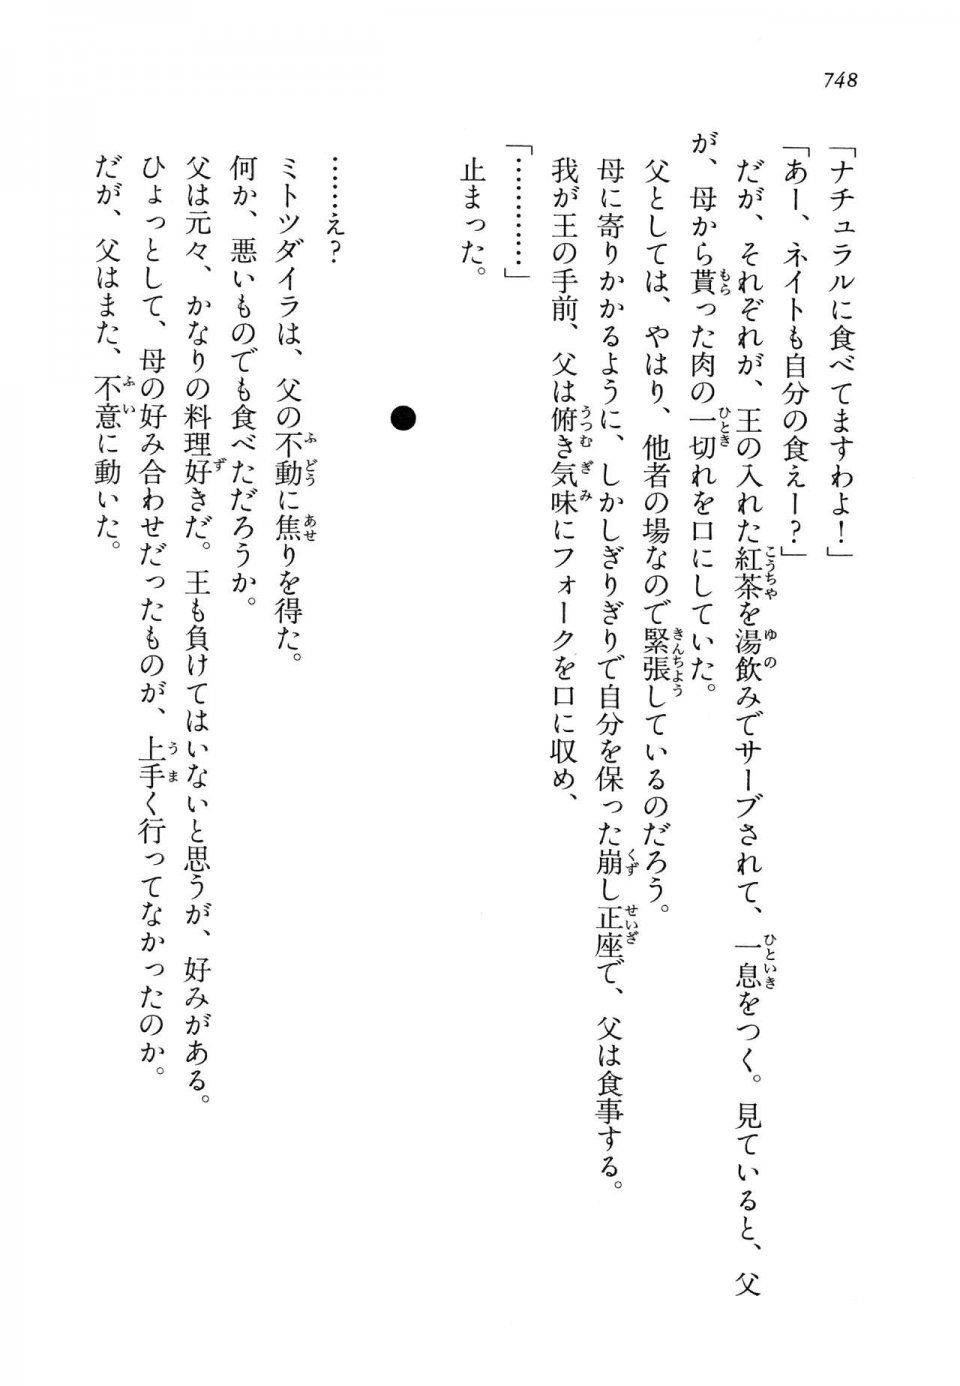 Kyoukai Senjou no Horizon LN Vol 14(6B) - Photo #748